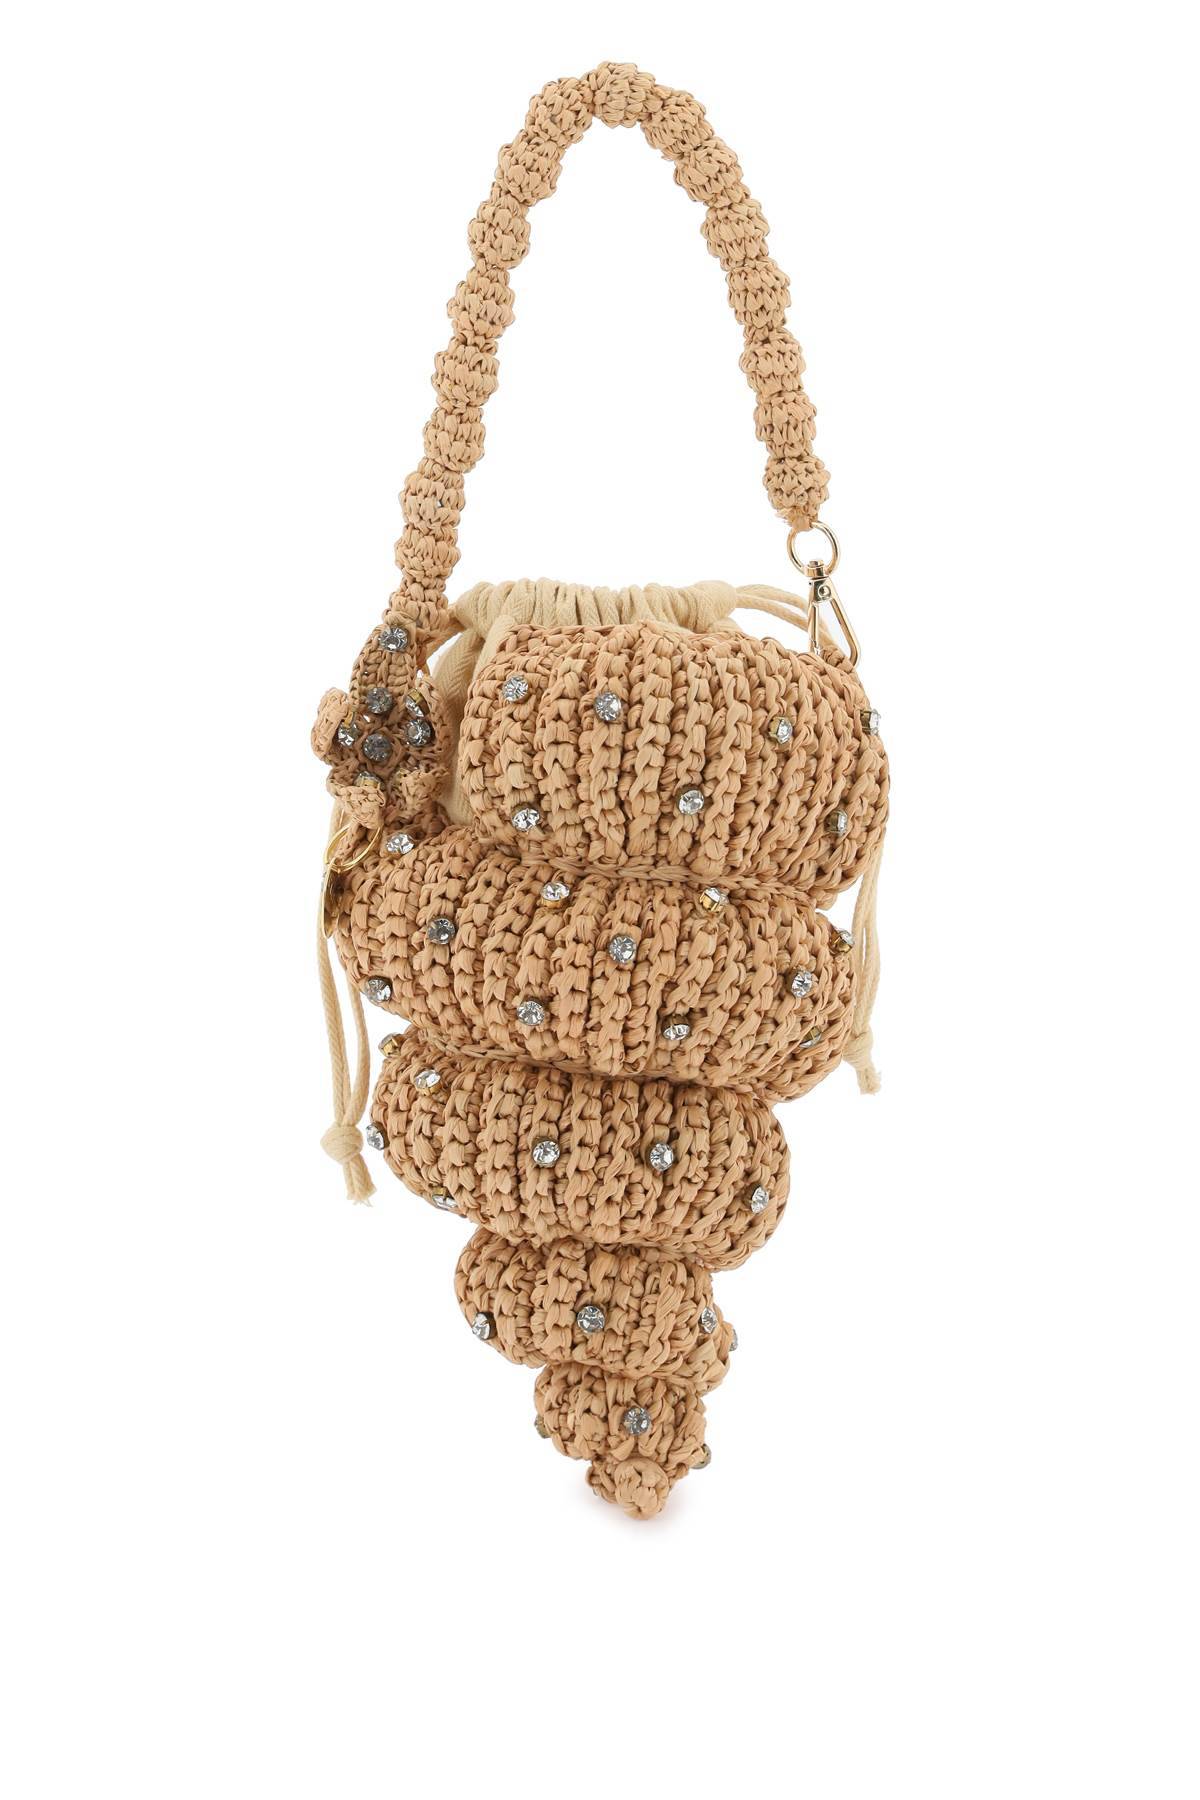 L'Alingi L'ALINGI "handbag in tulip shell design made of r